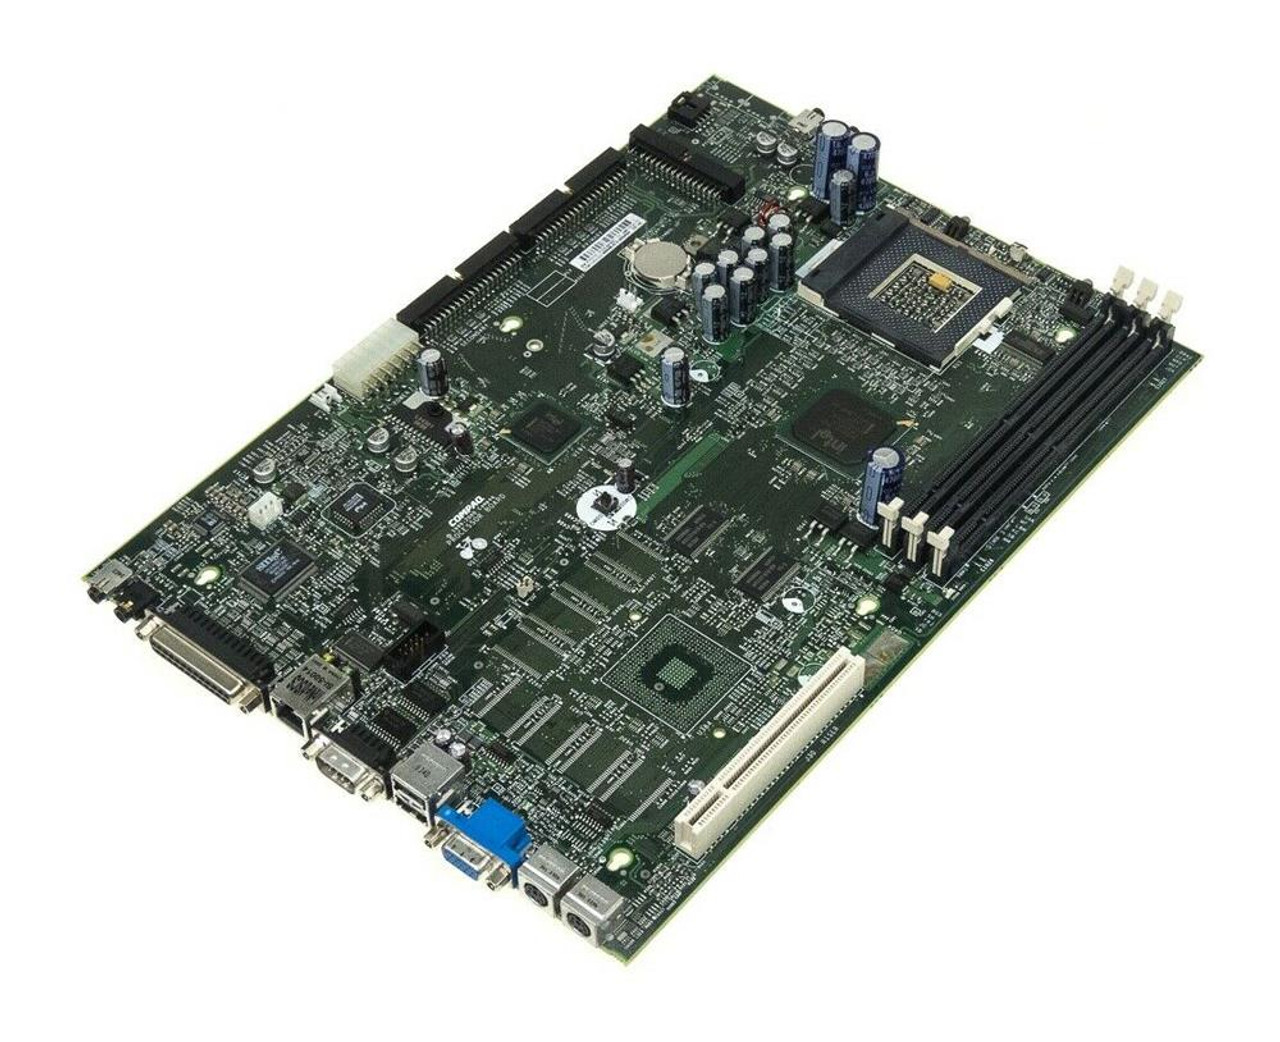 187500-001 Compaq System Board (Motherboard) Socket 370 for DeskPro EN SFF Desktop PC (Refurbished)